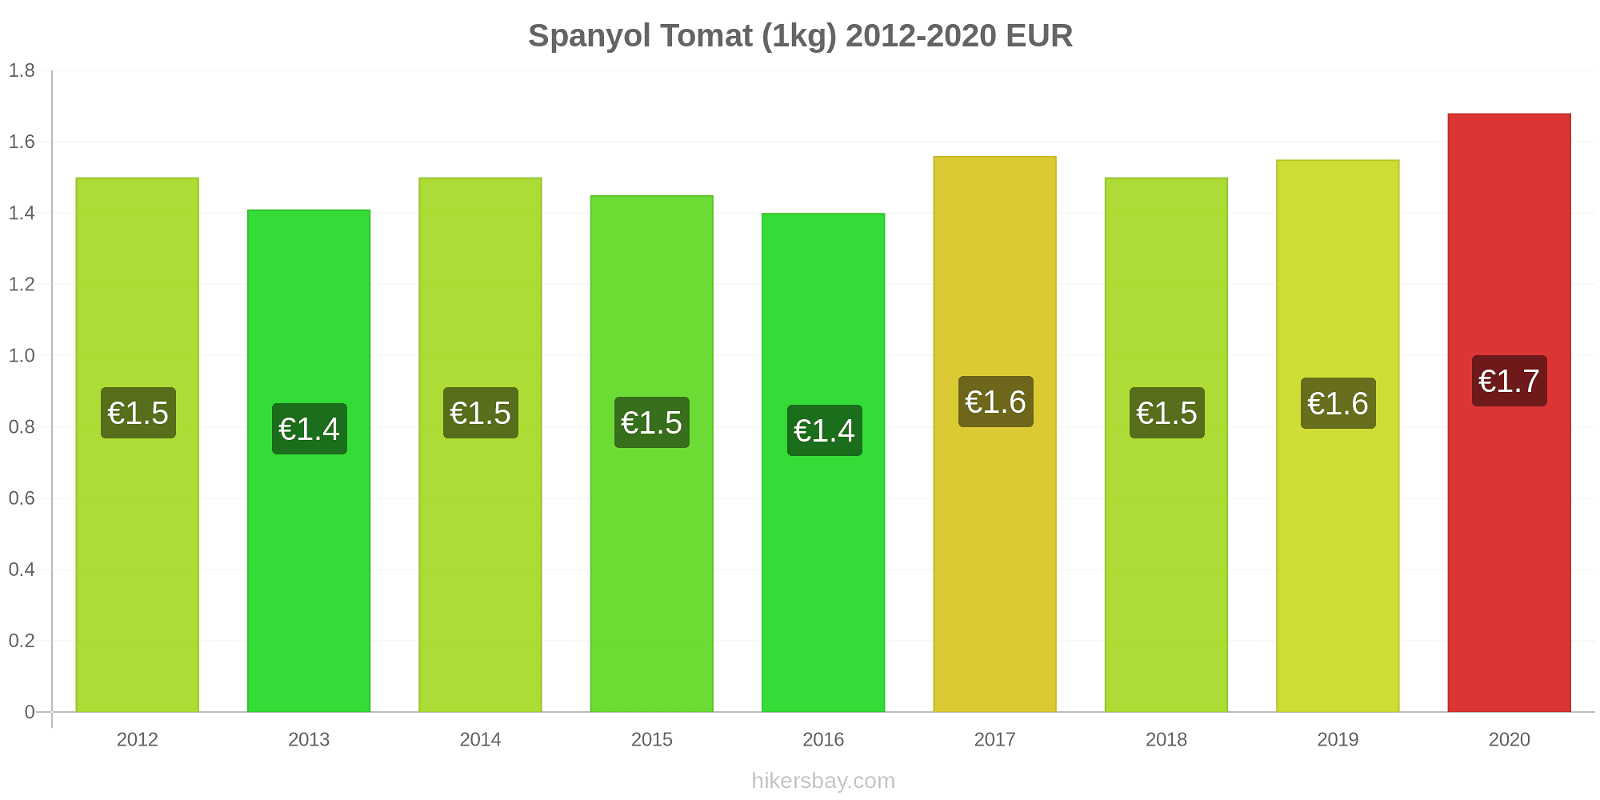 Spanyol perubahan harga Tomat (1kg) hikersbay.com